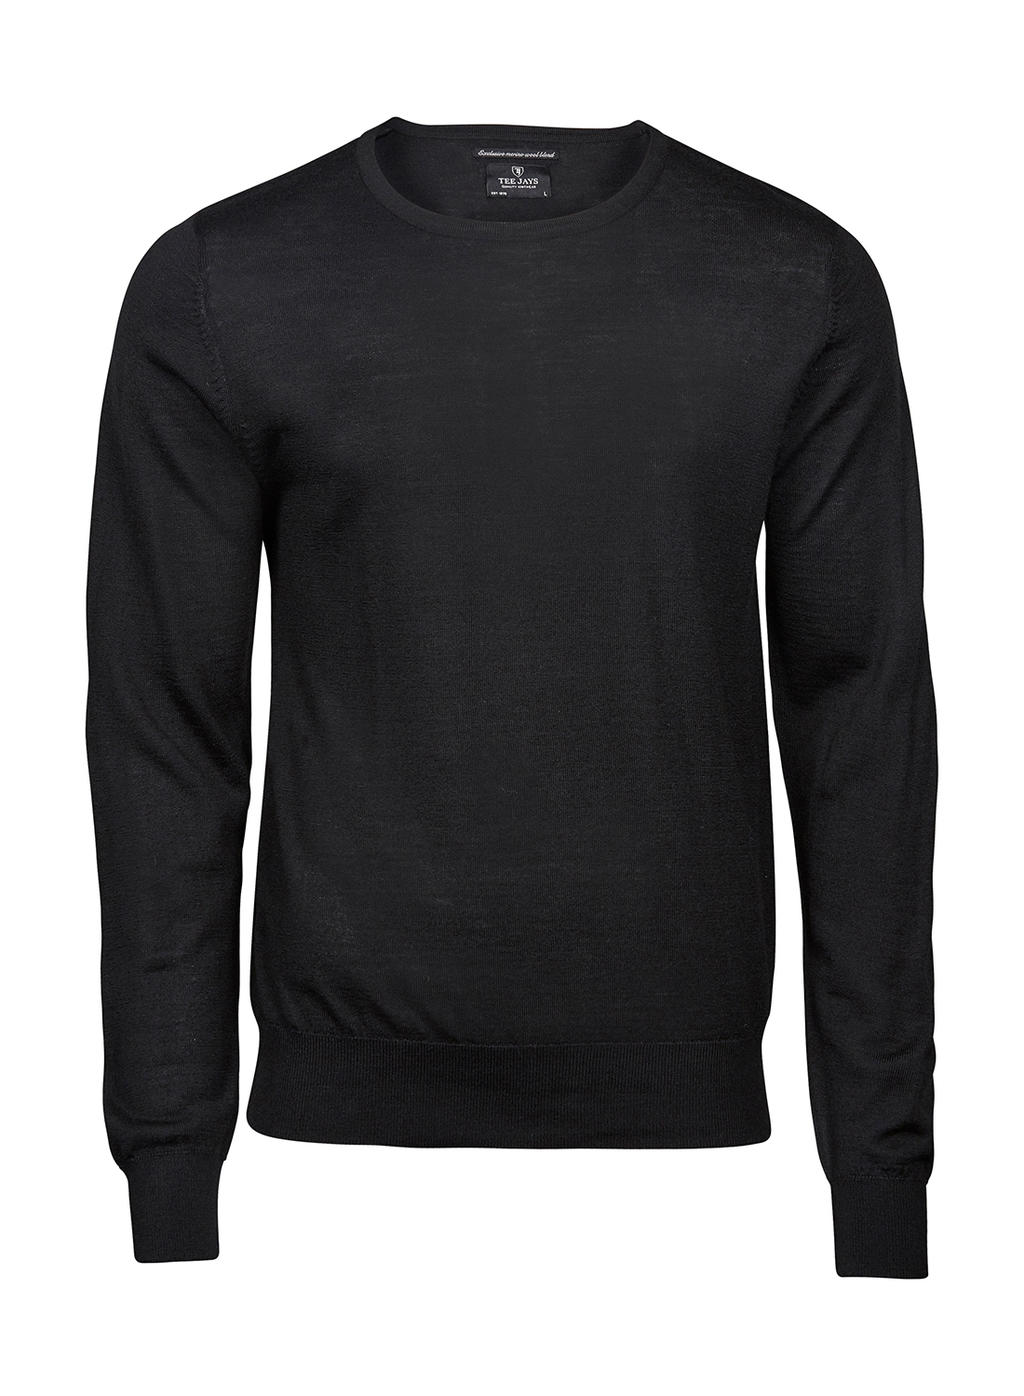  Mens Crew Neck Sweater in Farbe Black